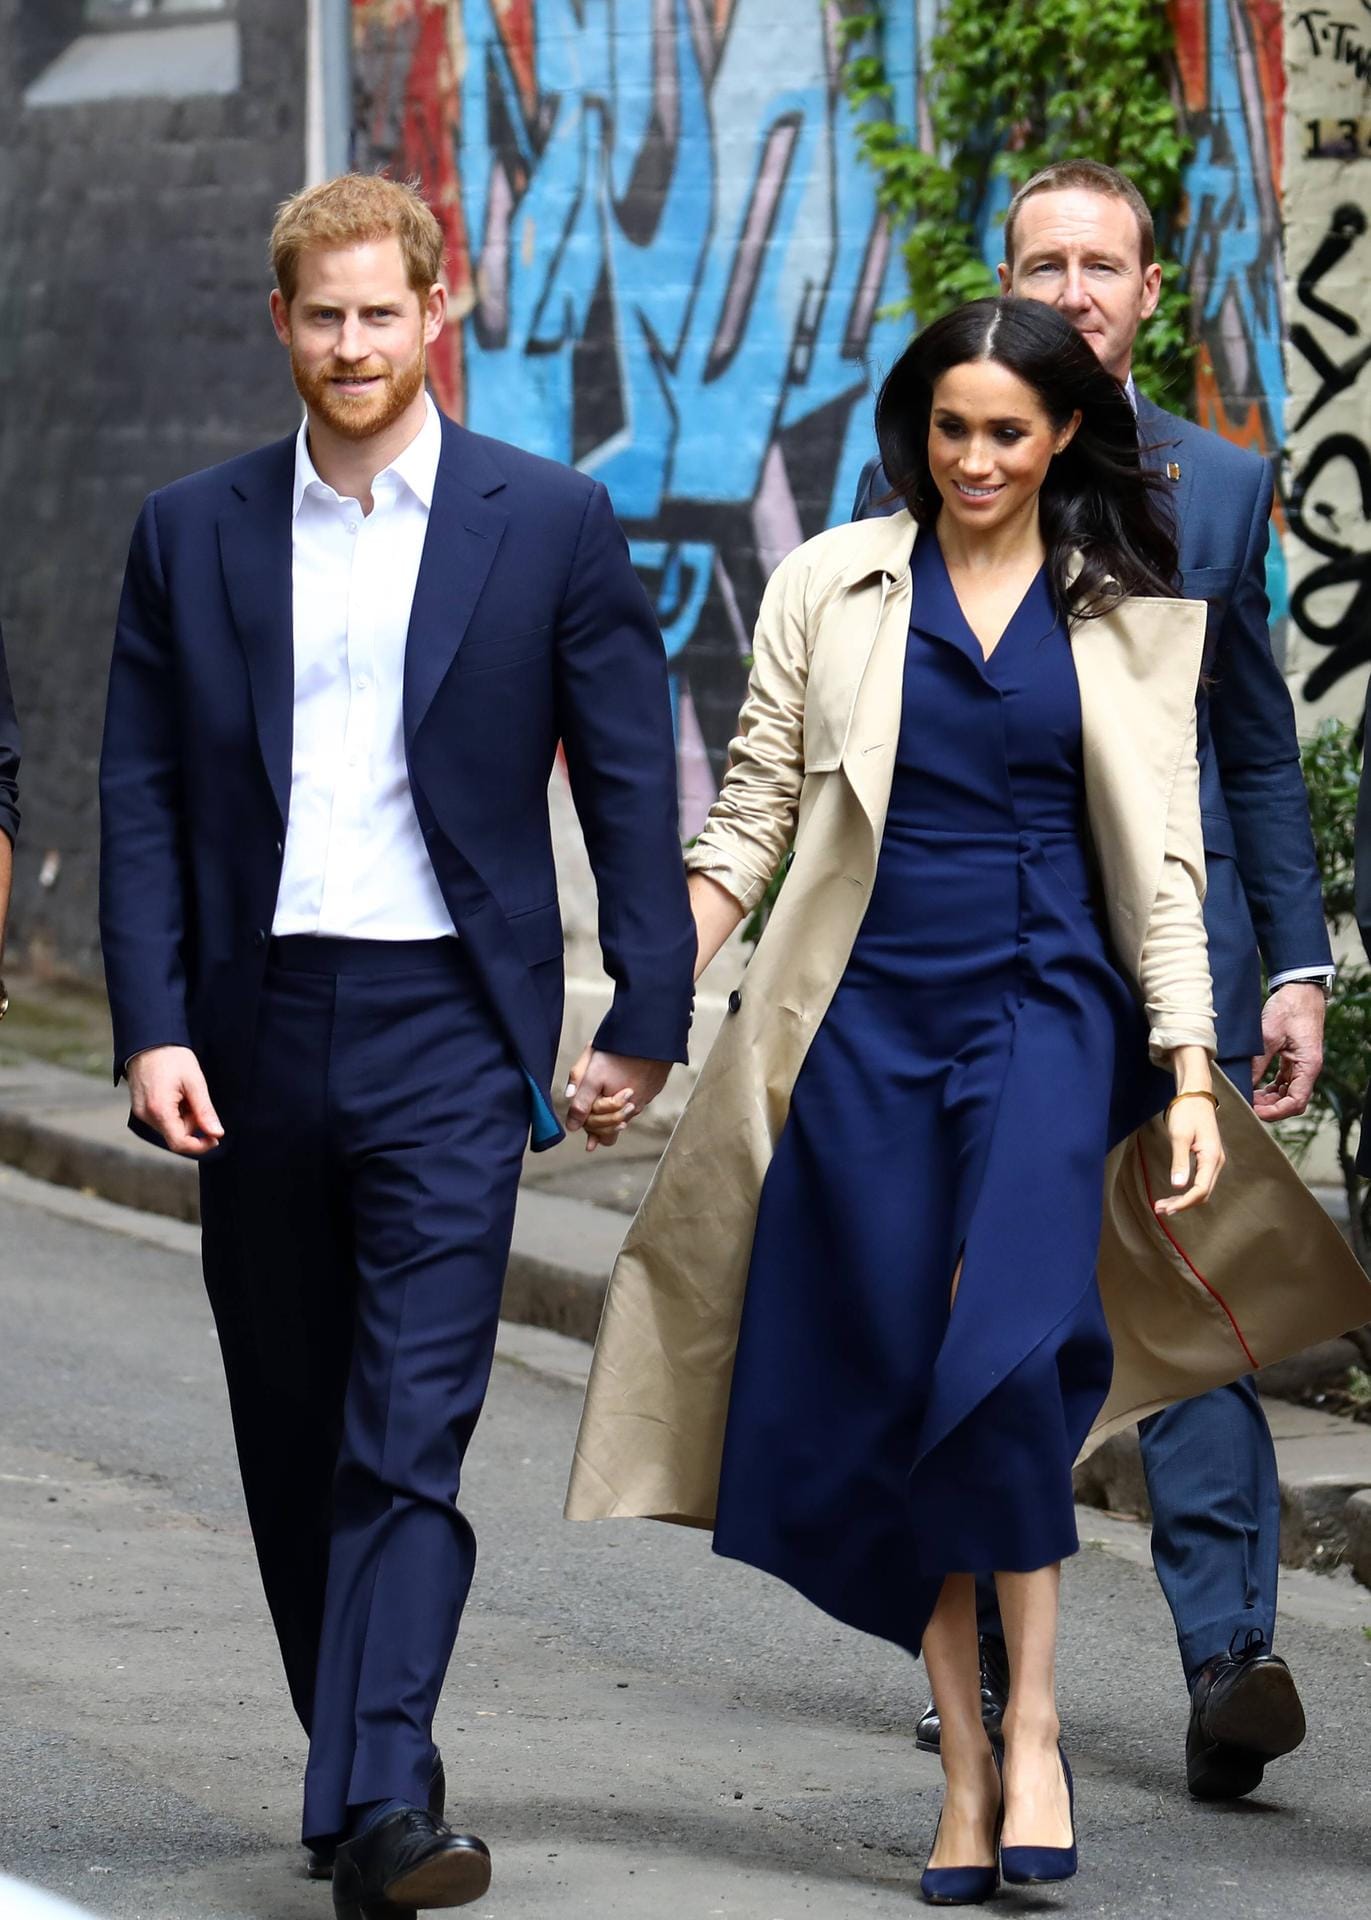 Angekommen in Melbourne: Die Herzogin im blauen maßgeschneiderten Kleid von Dion Lee mit farblich passenden Pumps von Manolo Blahnik und einem Trenchcoat.